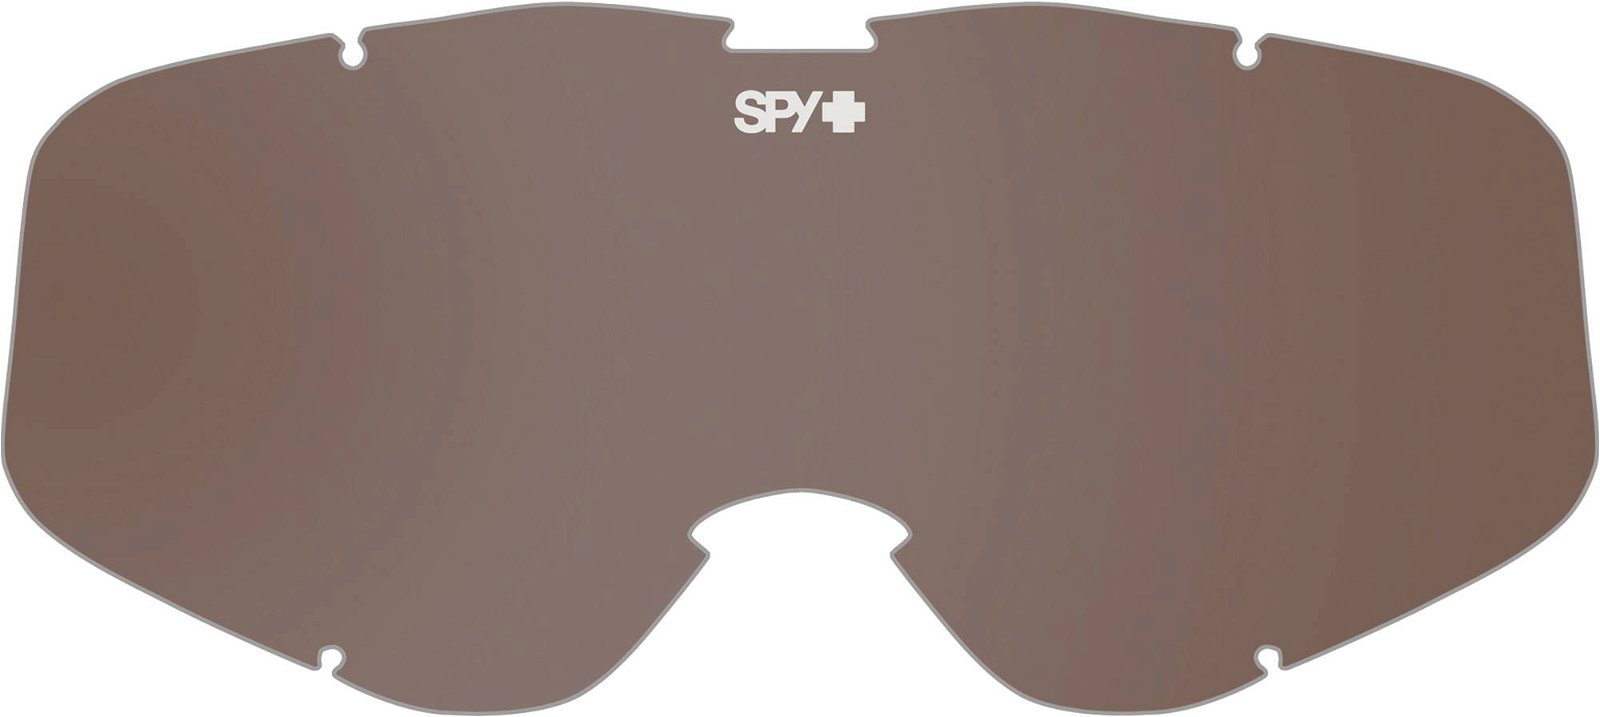 Spy Cadet Replacement Lens | Ski og utstyr